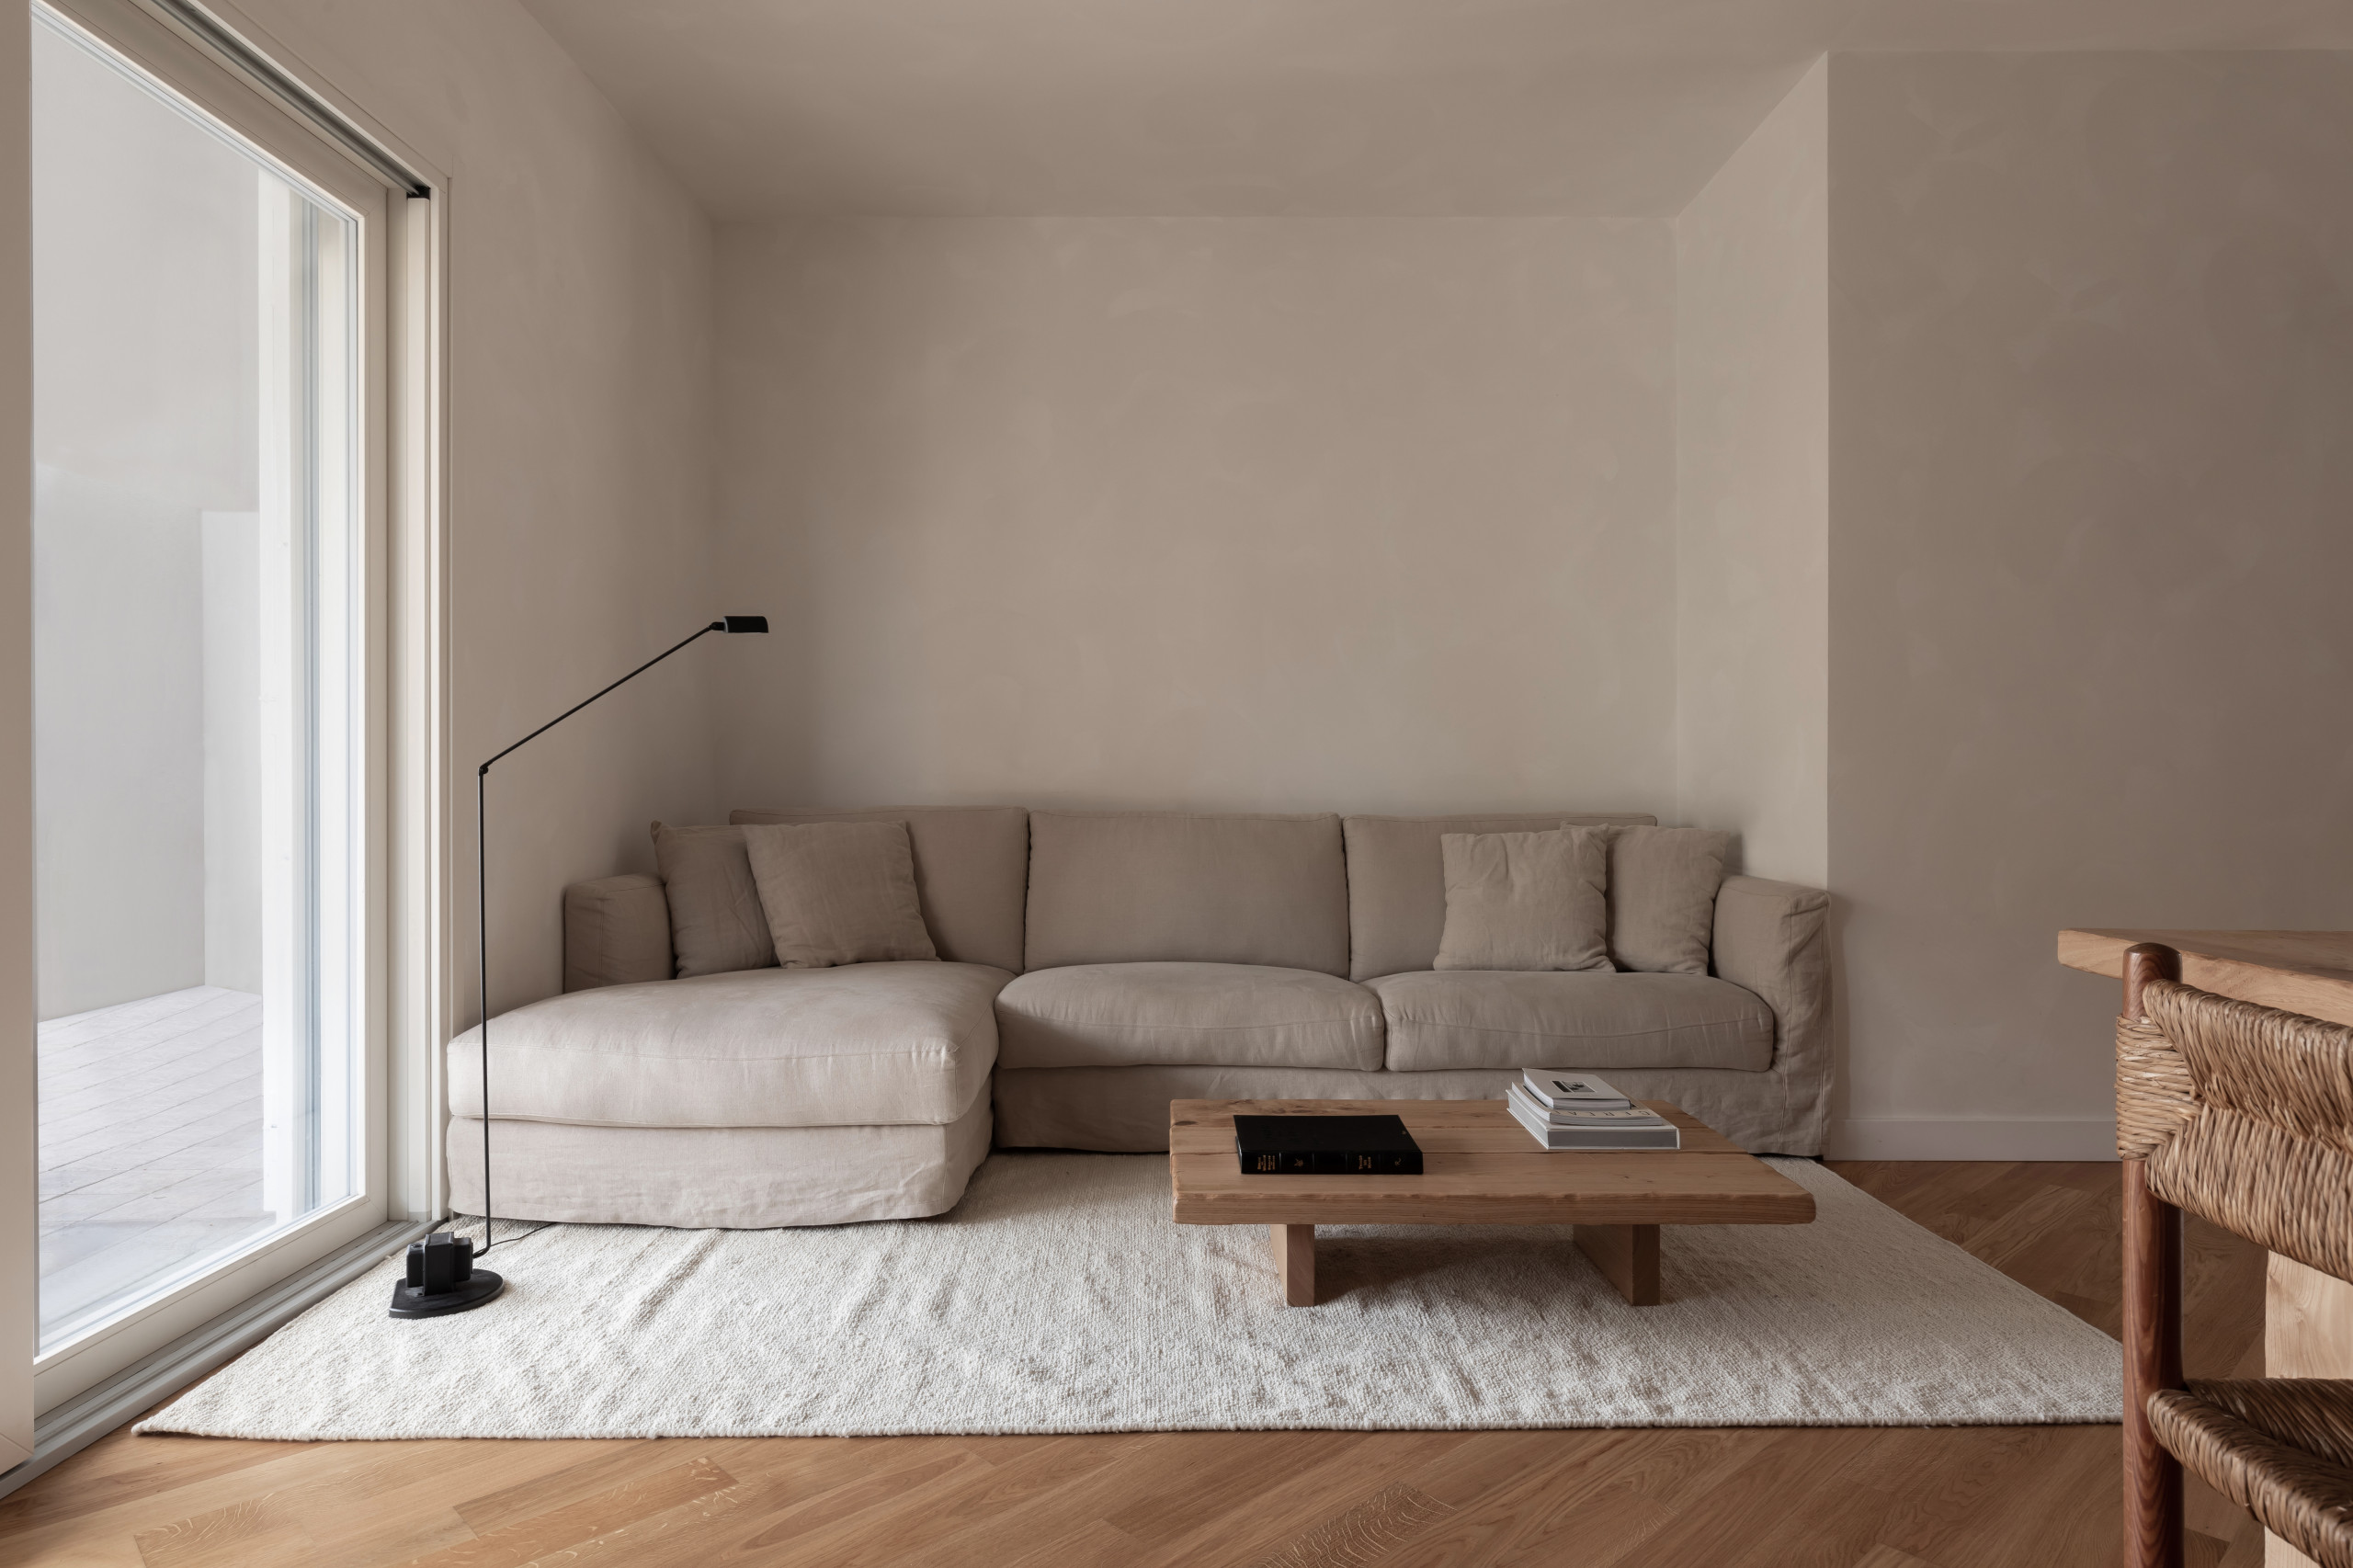 Home design - contemporary home design idea in Rome